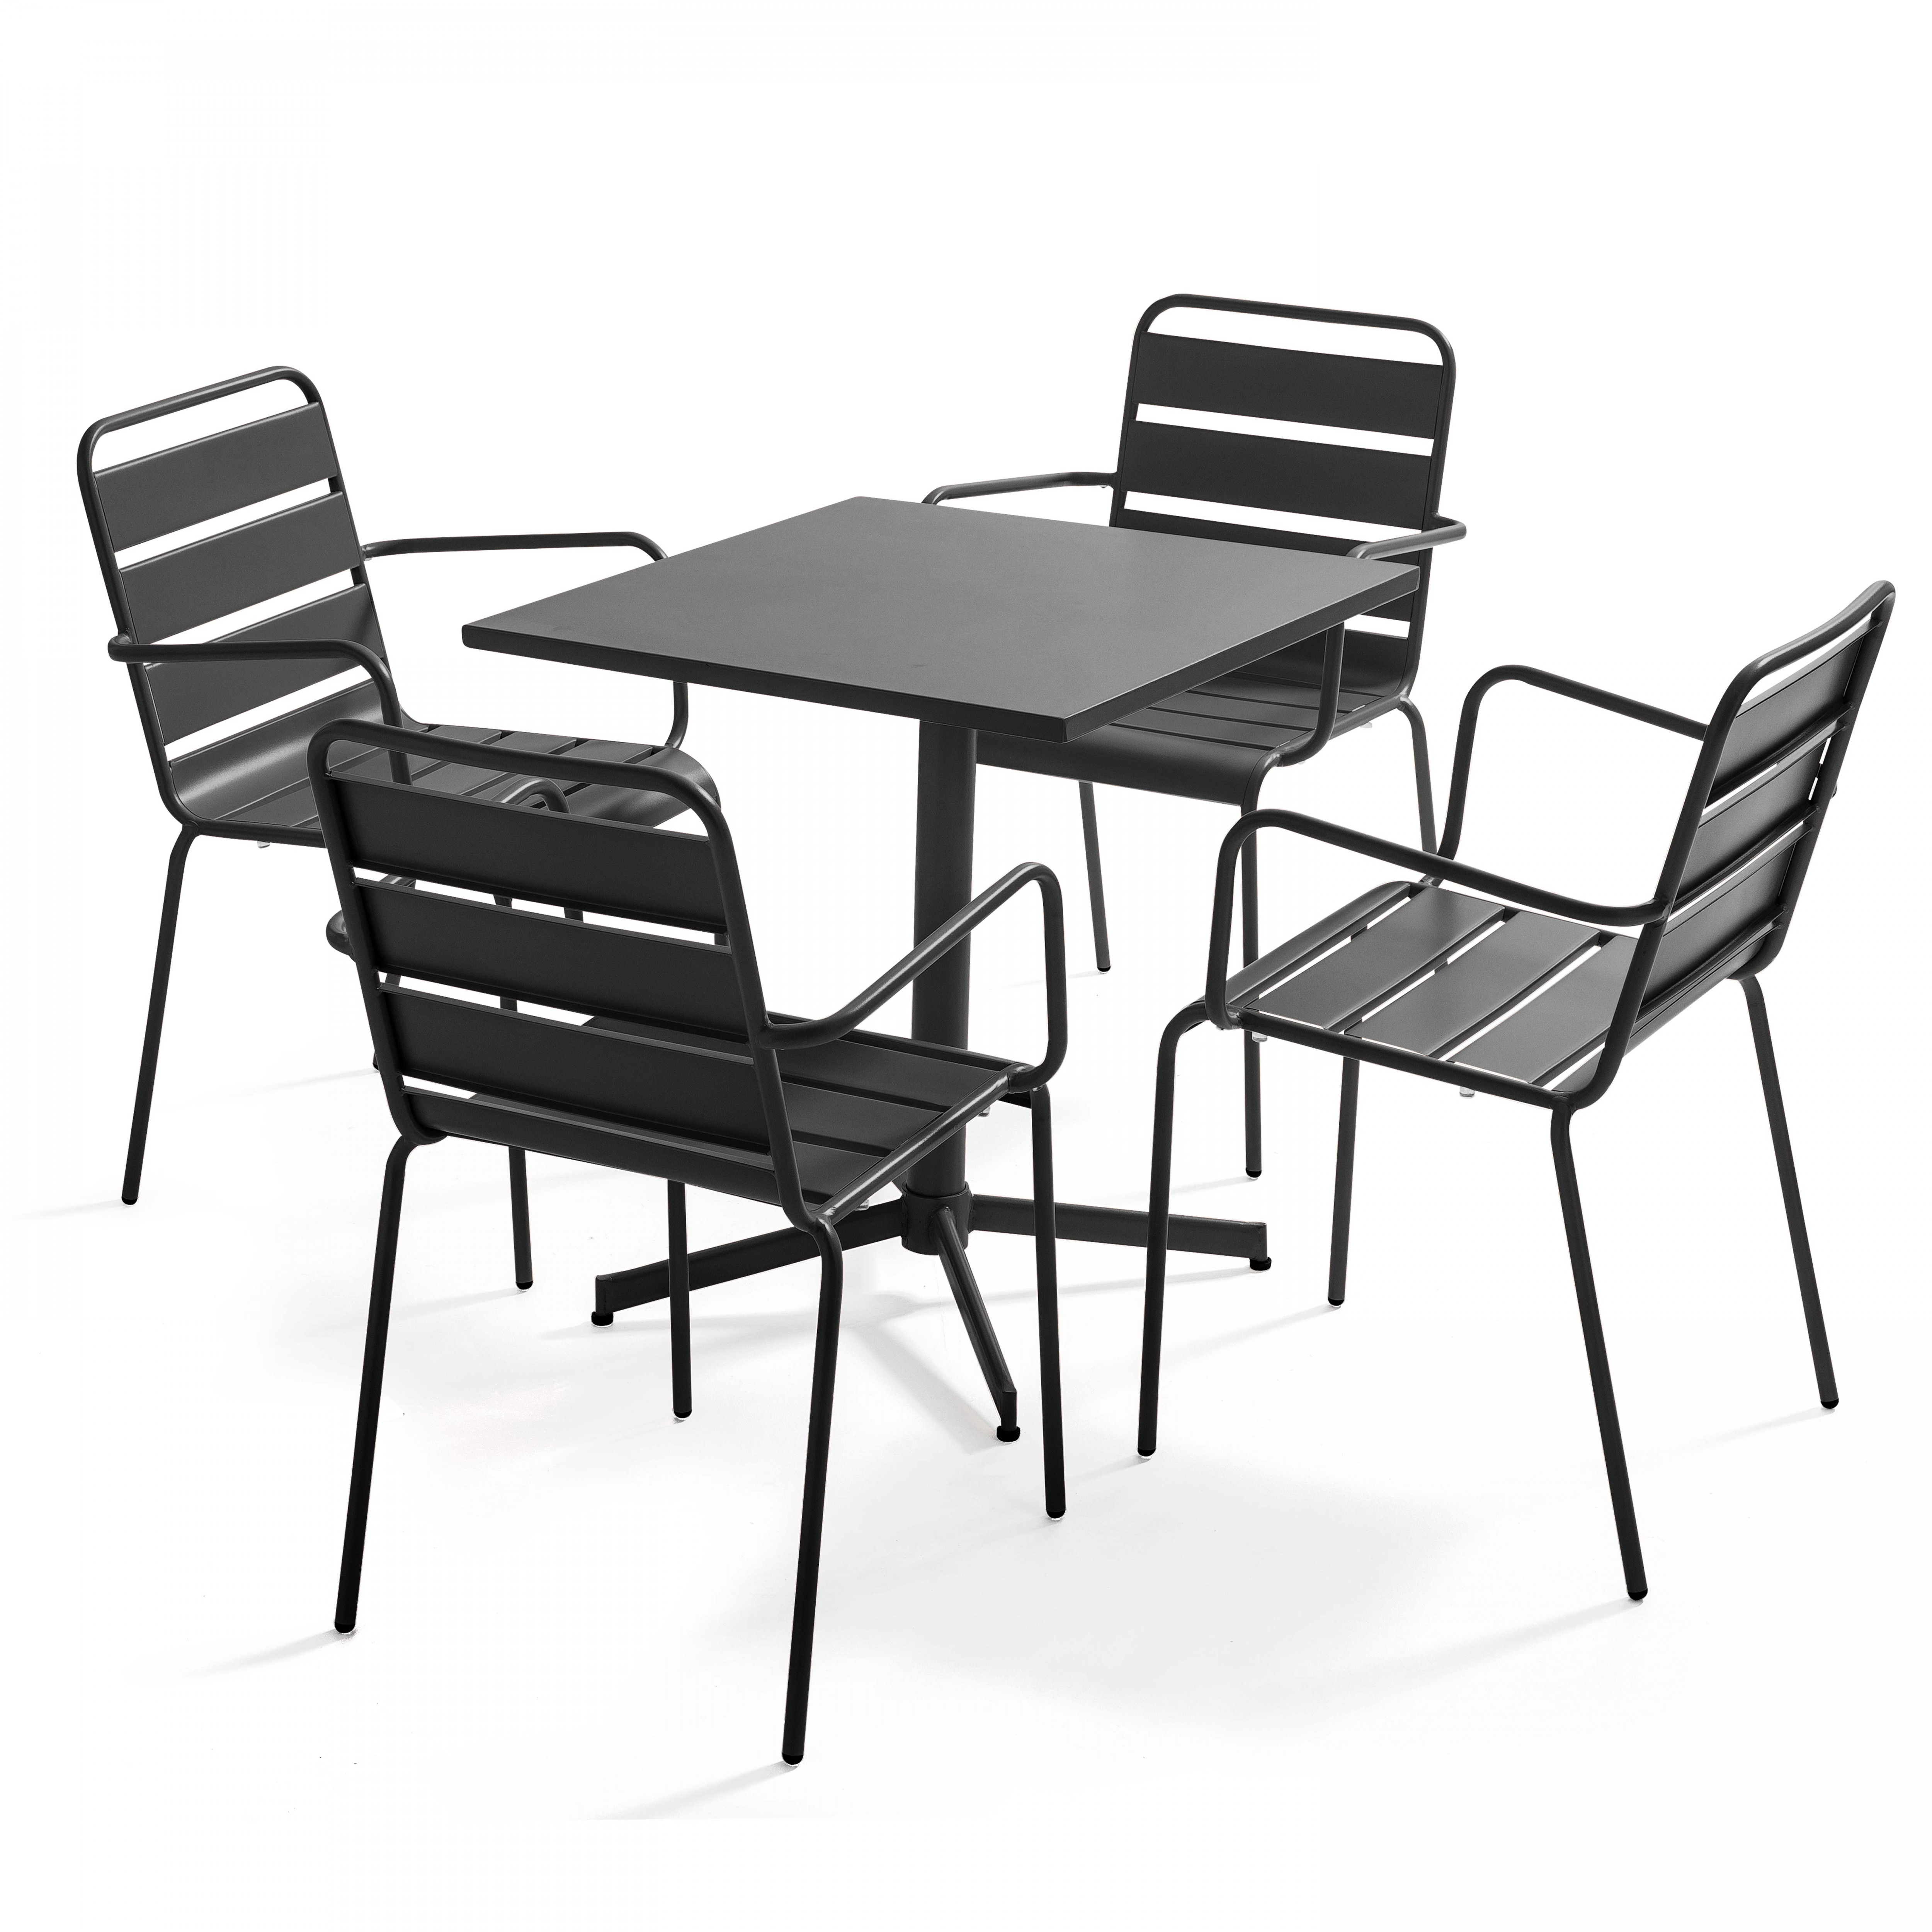 Table de jardin carrée et 4 fauteuils métal anthracite